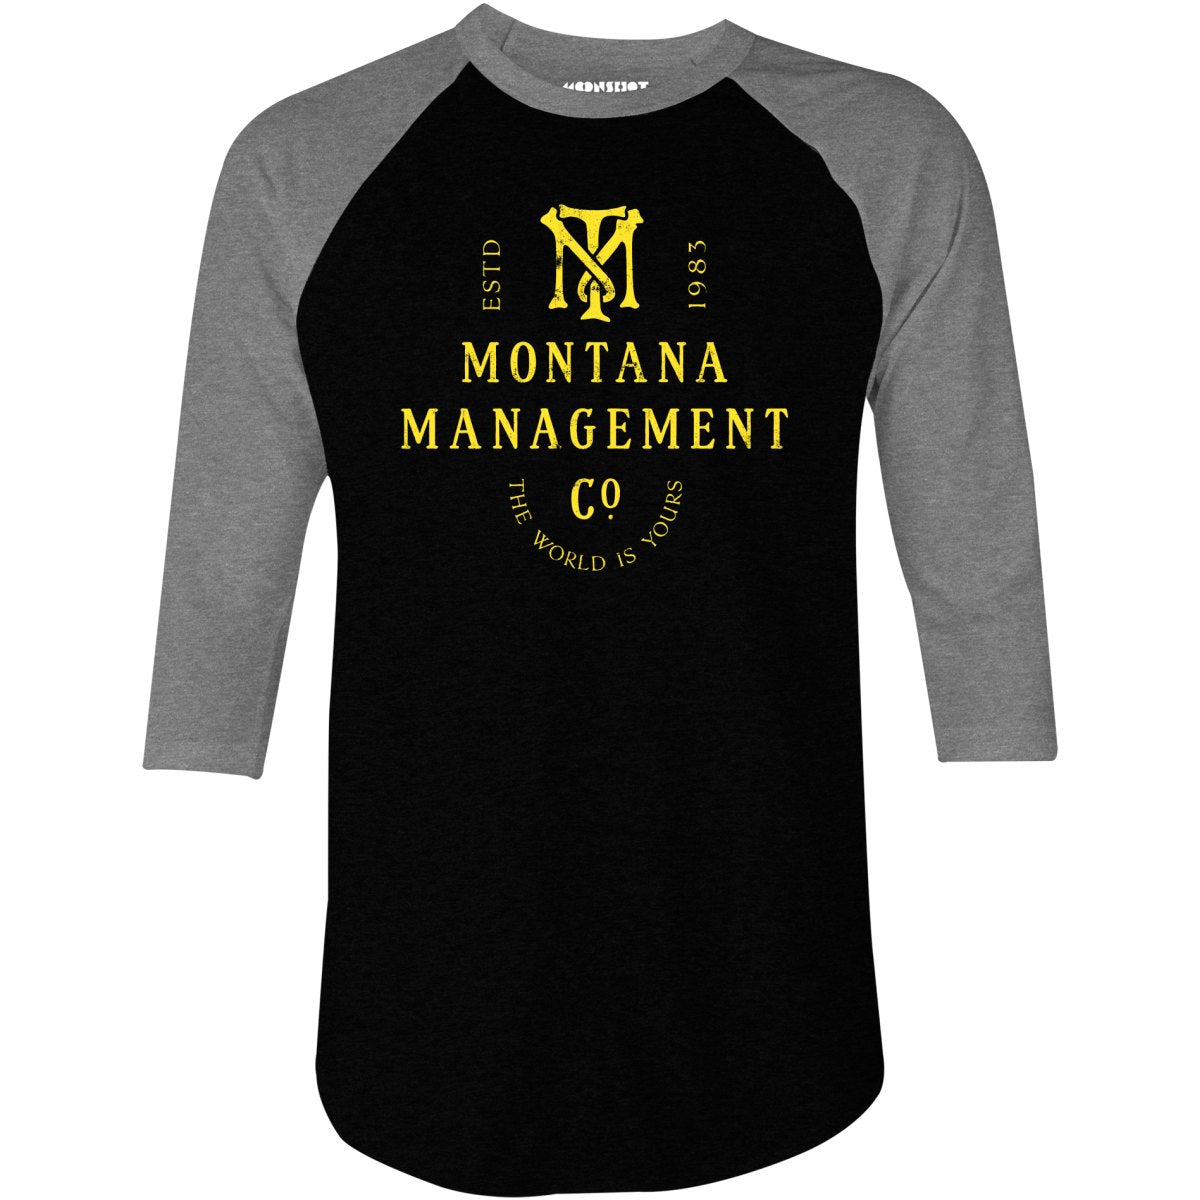 Montana Management Co. - 3/4 Sleeve Raglan T-Shirt